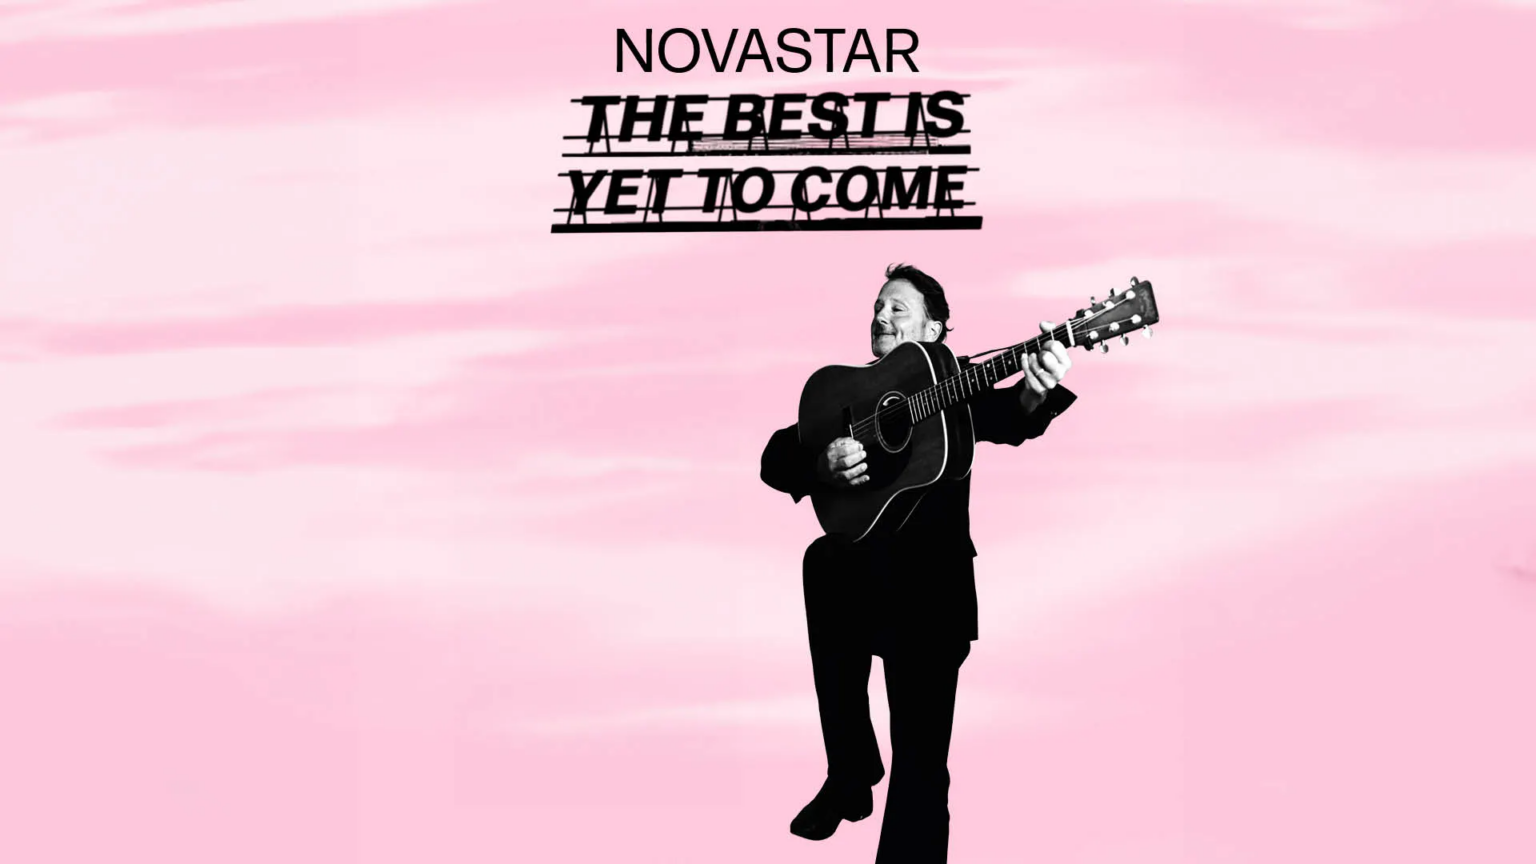 Gitarist op roze achtergrond met tekst "Novastar The Best...